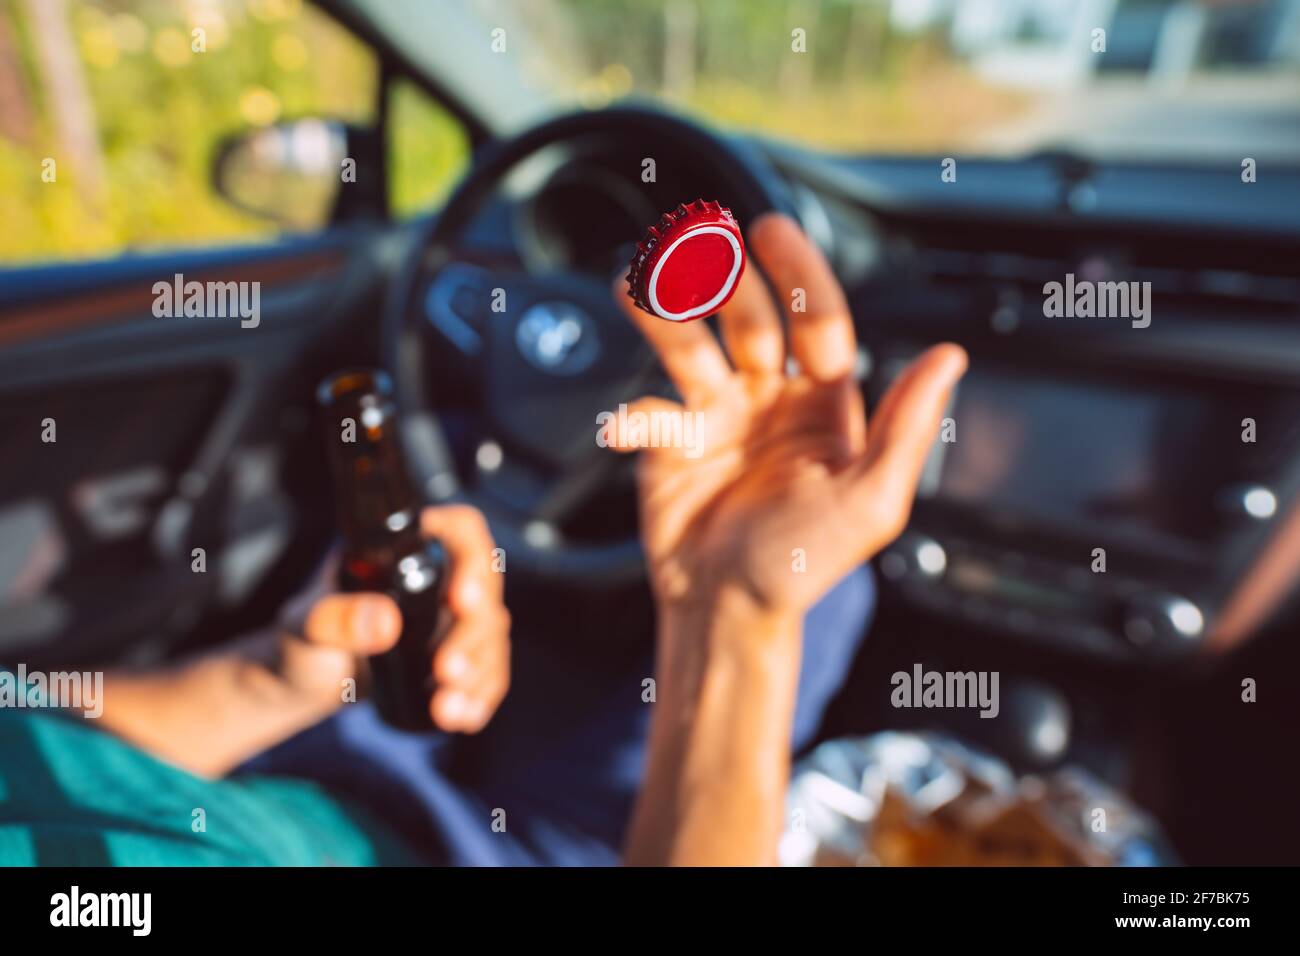 Un jeune homme boit de la bière dans la voiture et jette le bouchon de la bouteille. Concentrez-vous sur le capuchon rouge en l'air. Conducteur sous influence d'alcool. Conducteur ivre Banque D'Images